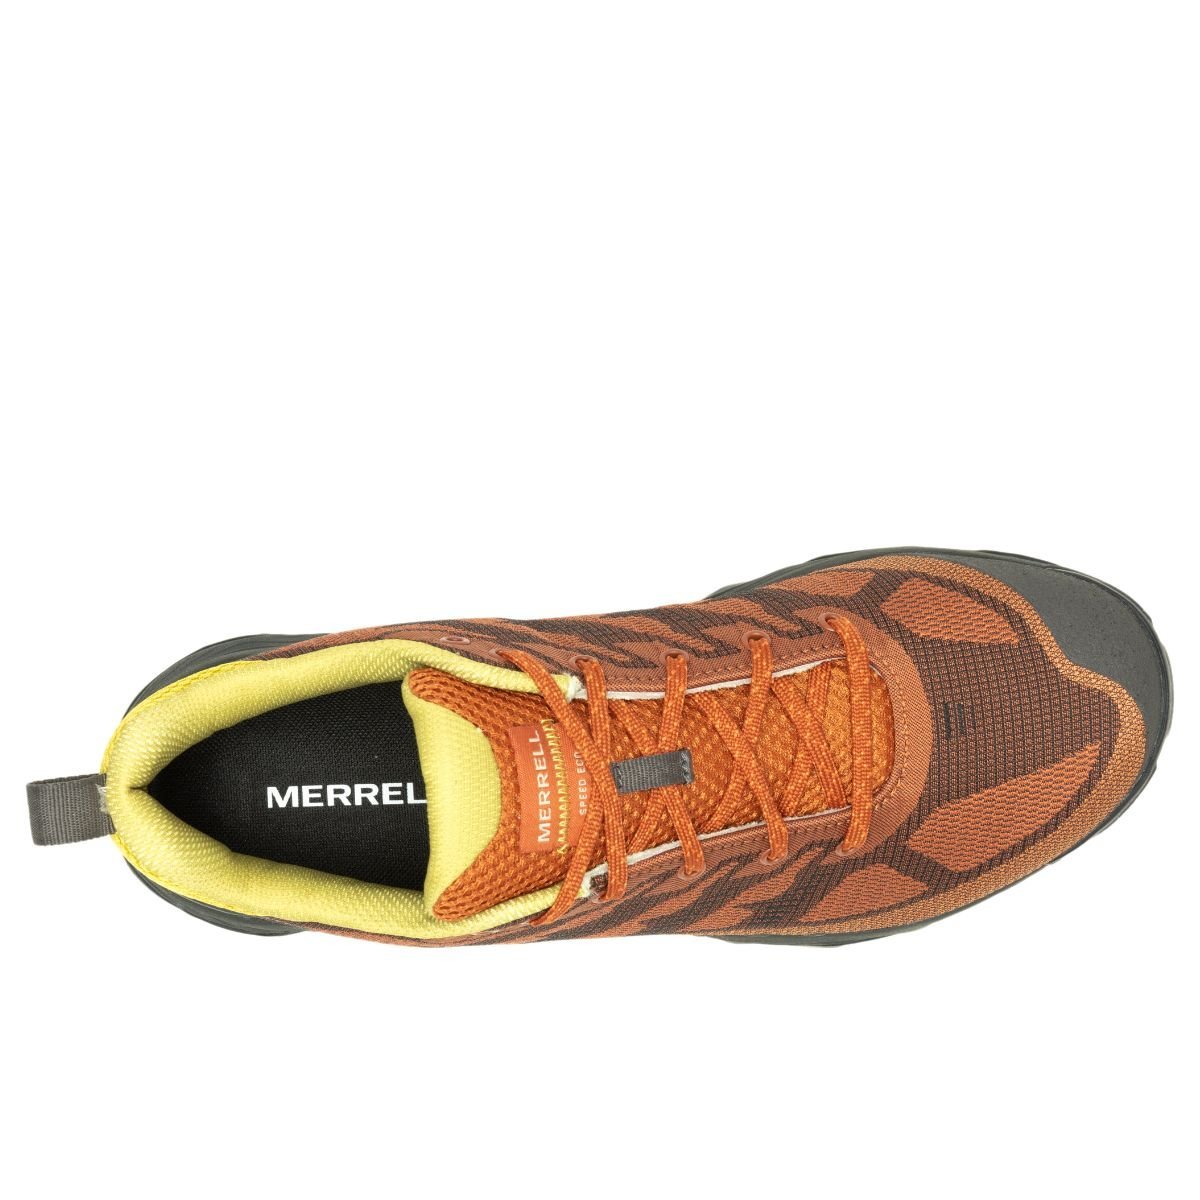 Topánky Merrell J037687 Speed Eco M - oranžová